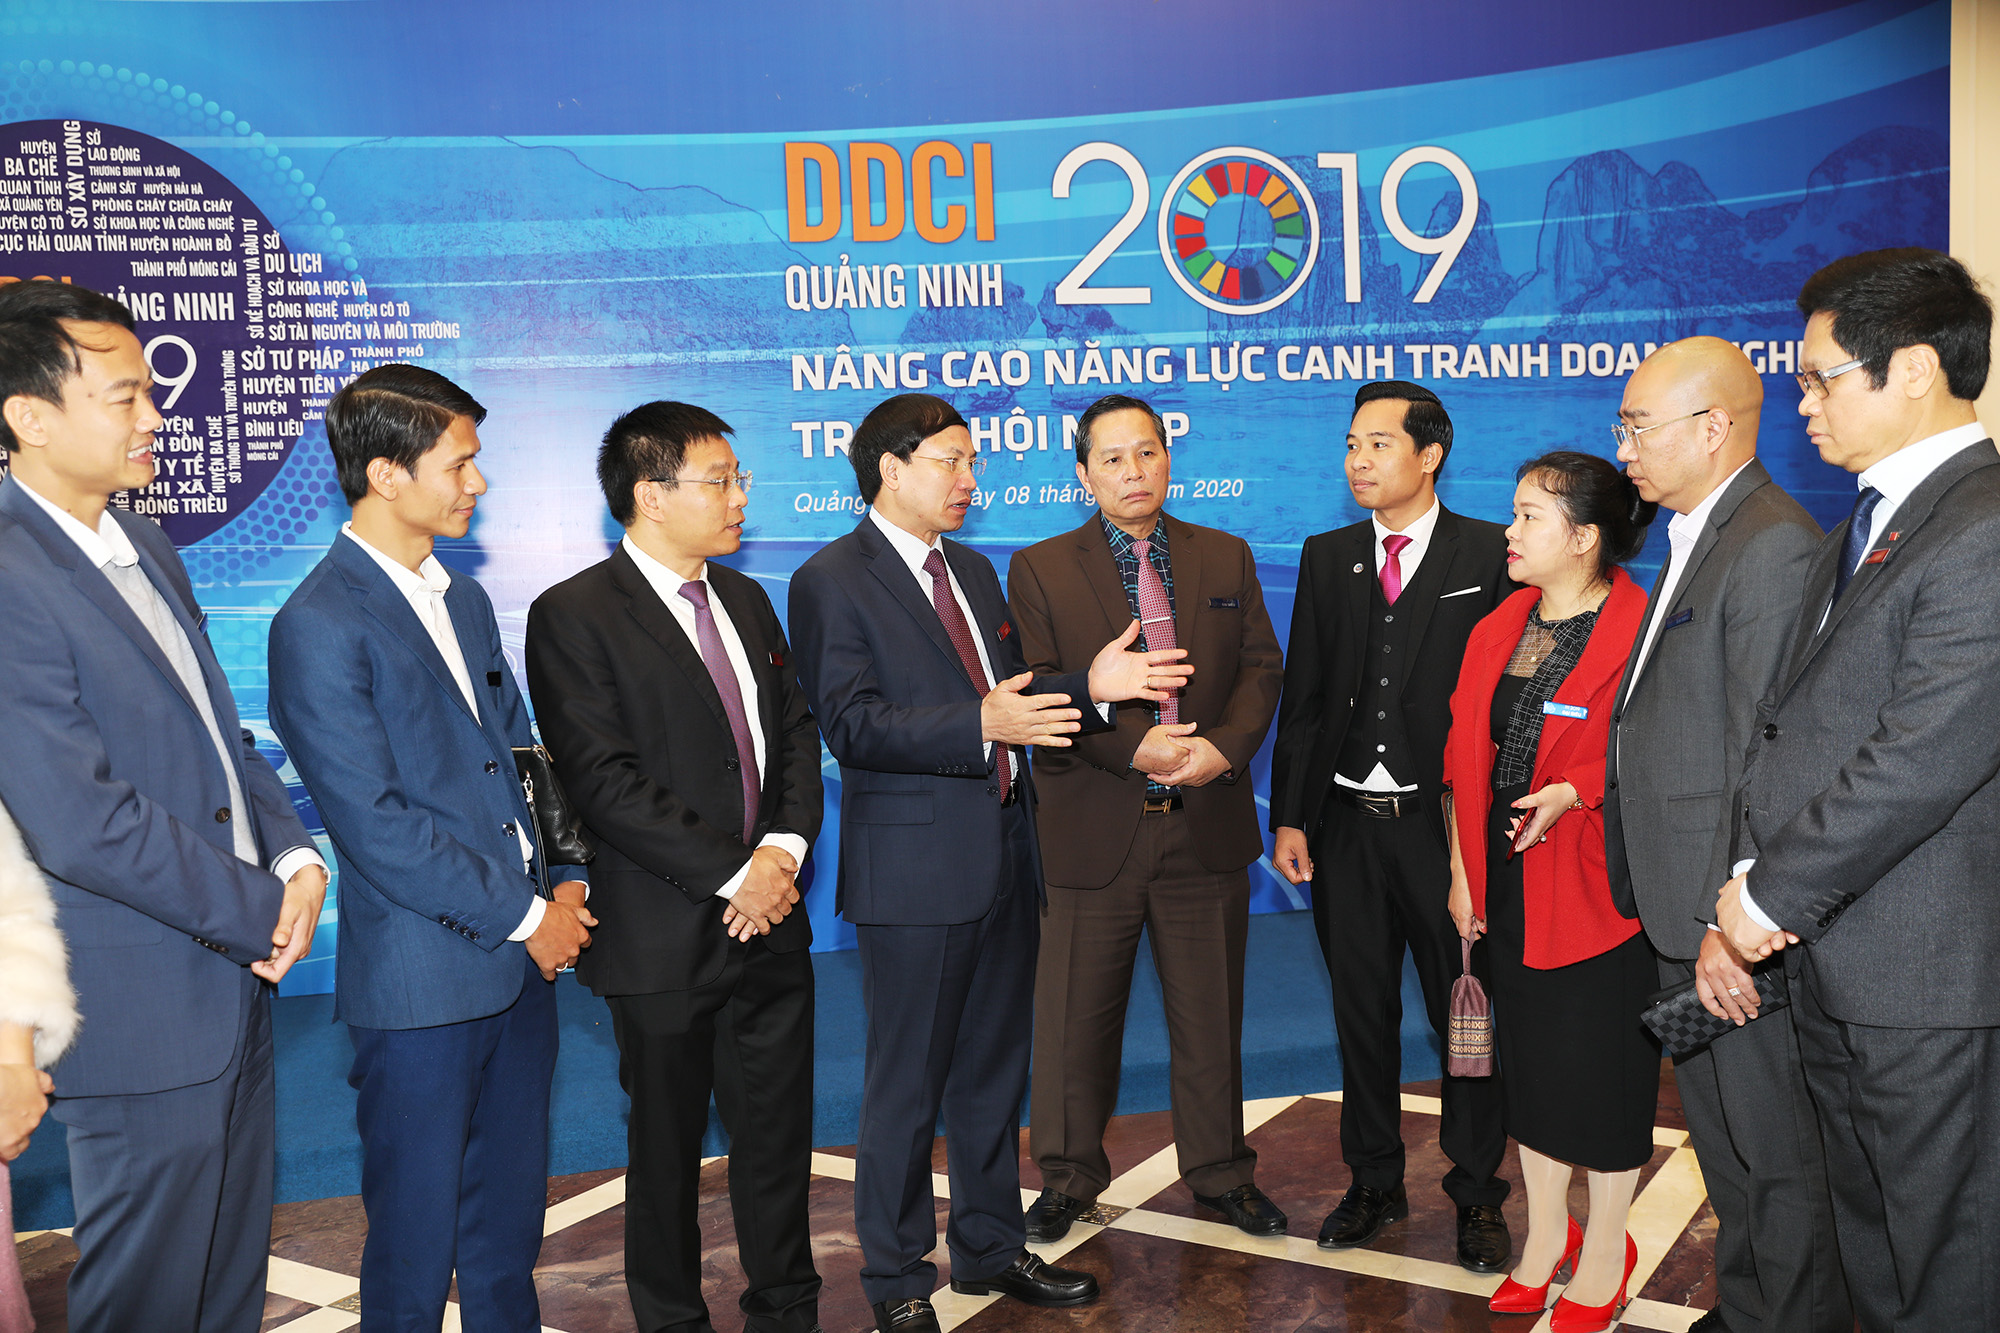 Lãnh đạo tỉnh Quảng Ninh trò chuyện với doanh nghiệp tại lễ công bố chỉ số xếp hạng năng lực cạnh tranh cấp sở, ngành, địa phương - DDCI Quảng Ninh 2019.